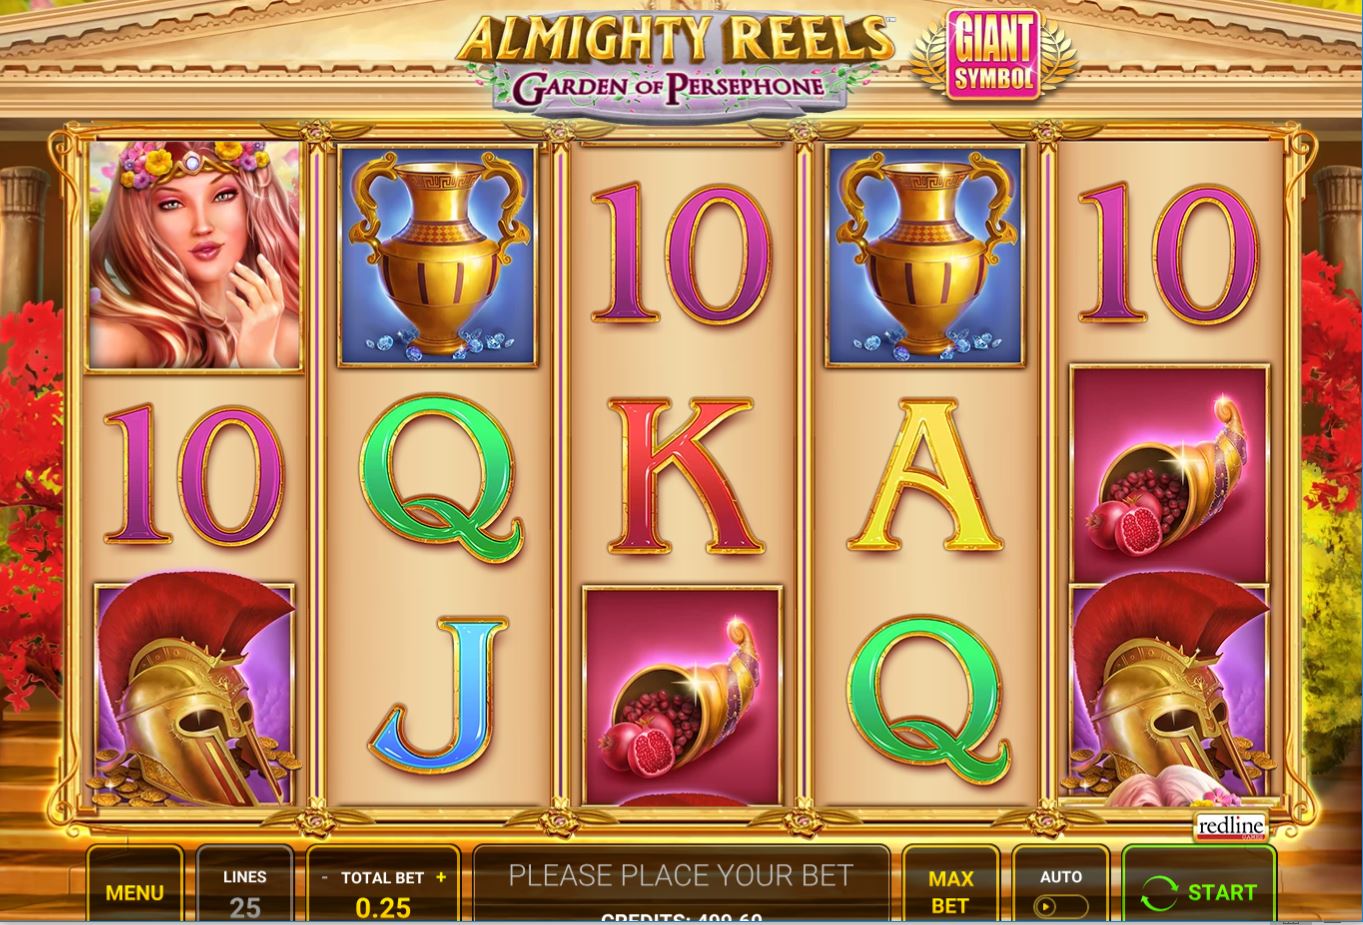  myvegas slots free las vegas casino games Almighty Reels—Garden of Persephone Free Online Slots 